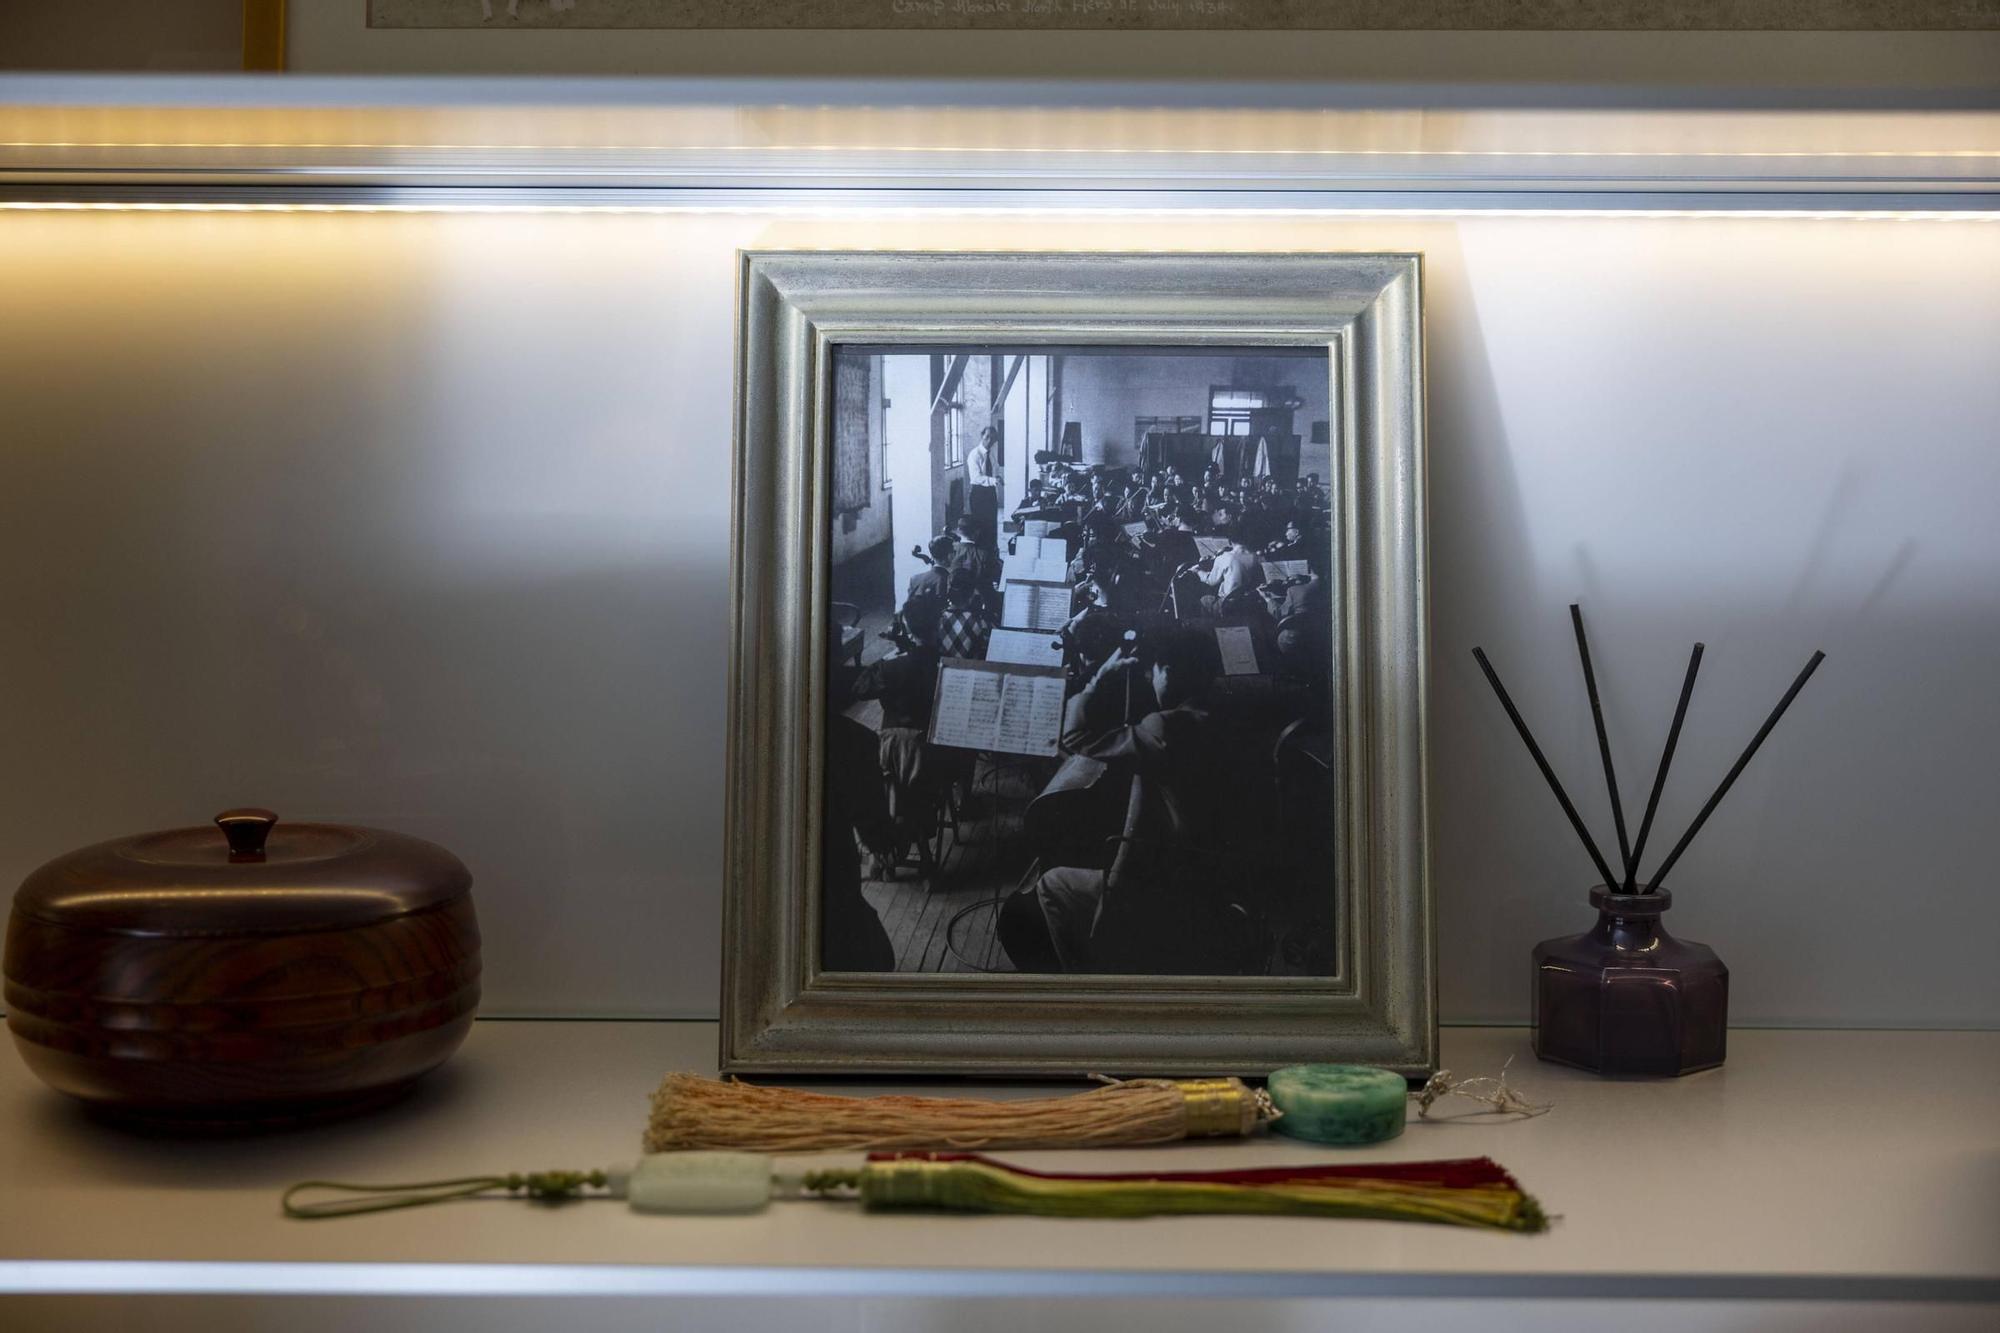 Fotos: El legado de Eaktay Ahn fundador de la Sinfónica de Baleares, sigue vivo